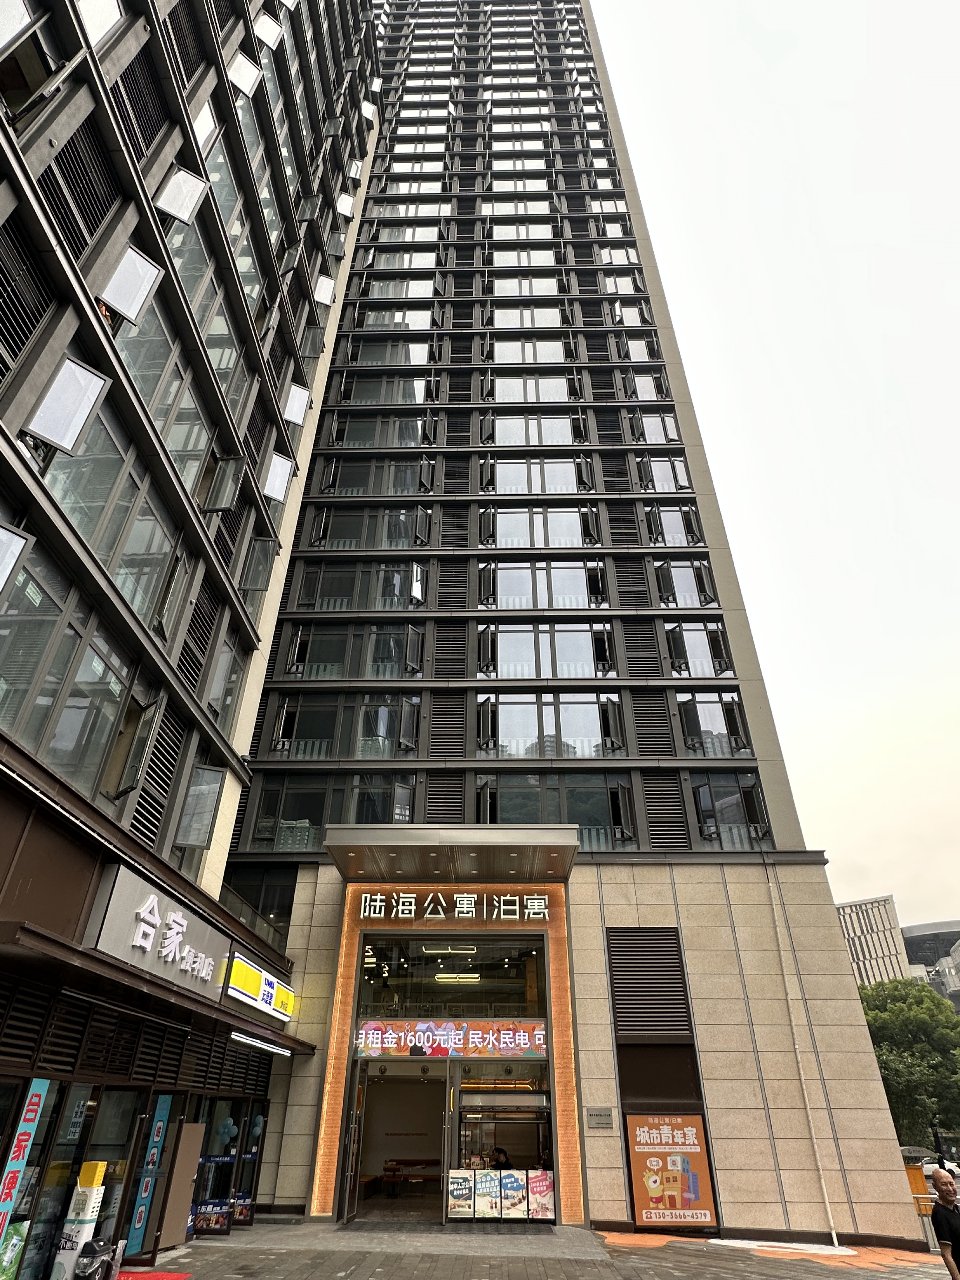 重庆天地B13公寓项目。重庆市住房城乡建委供图